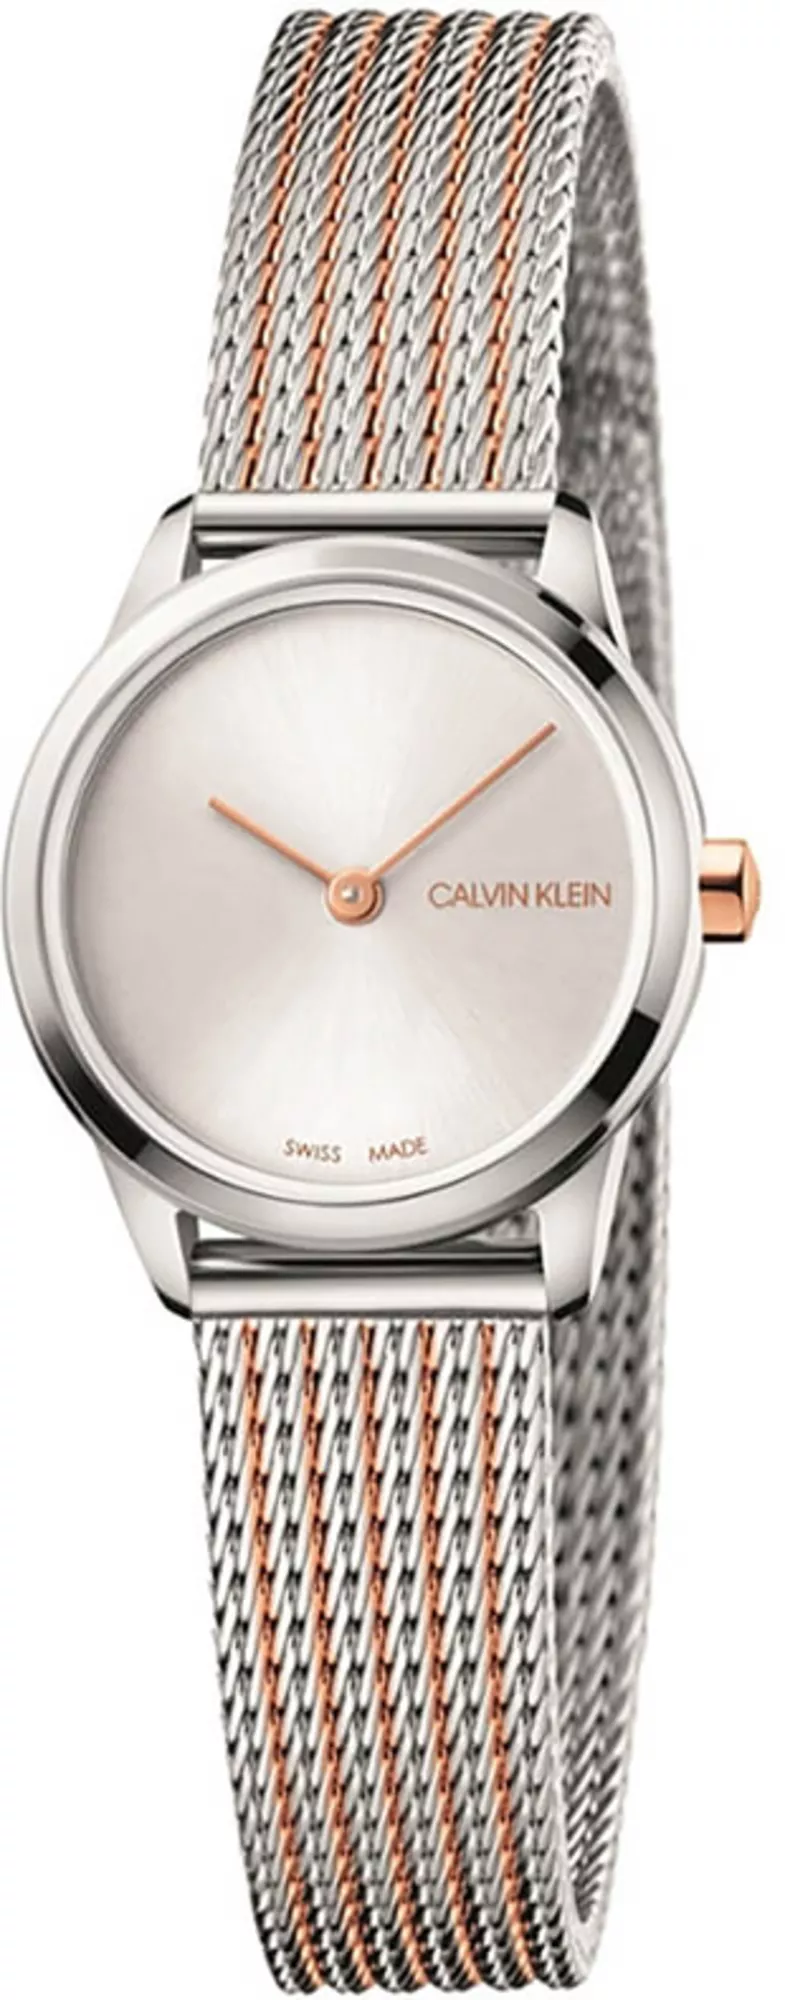 Часы Calvin Klein K3M23B26